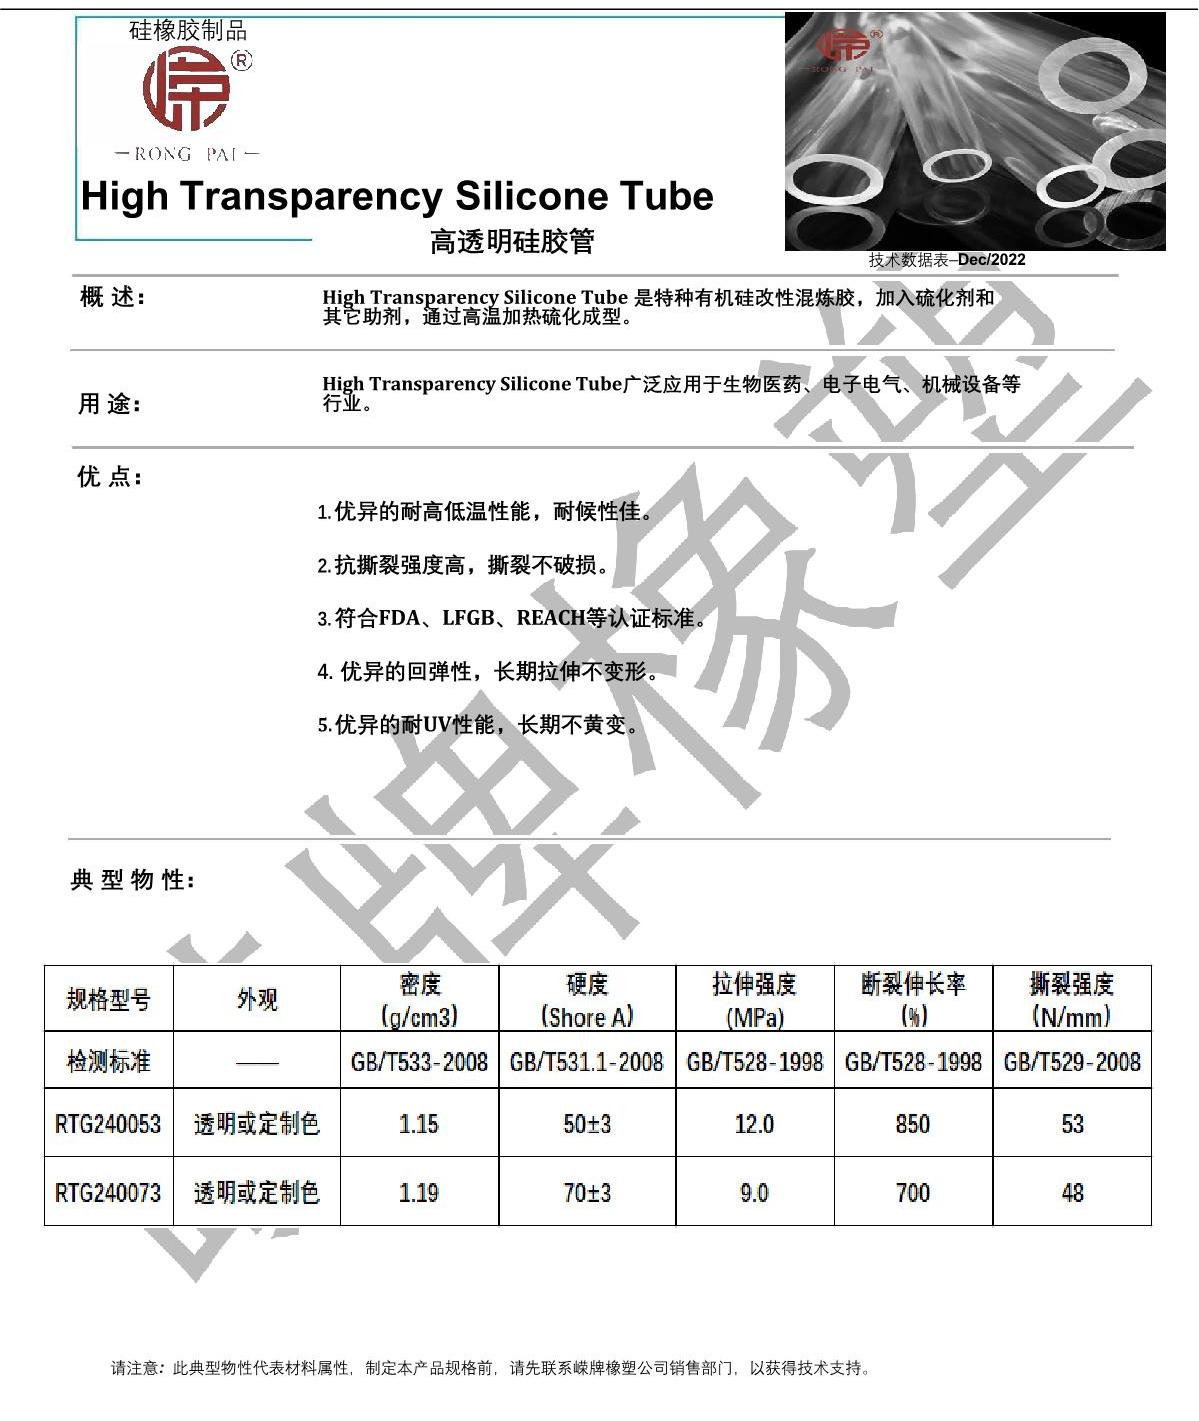 高透明硅胶管产品说明_1.JPG